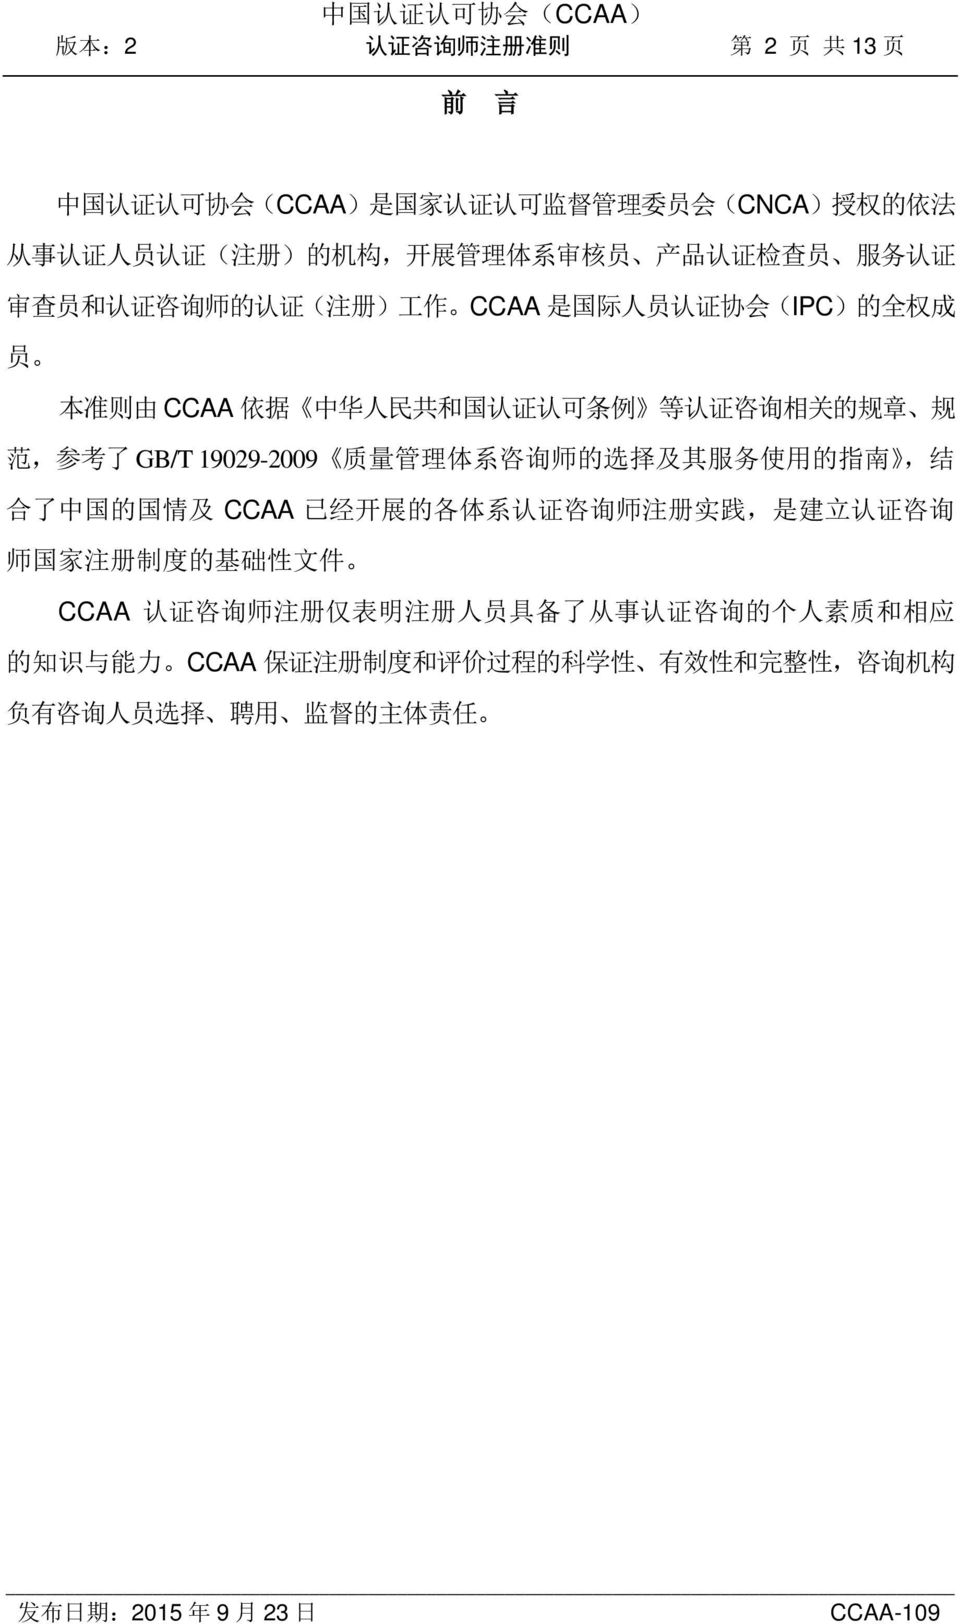 GB/T 19029-2009 质 量 管 理 体 系 咨 询 师 的 选 择 及 其 服 务 使 用 的 指 南, 结 合 了 中 国 的 国 情 及 CCAA 已 经 开 展 的 各 体 系 认 证 咨 询 师 注 册 实 践, 是 建 立 认 证 咨 询 师 国 家 注 册 制 度 的 基 础 性 文 件 CCAA 认